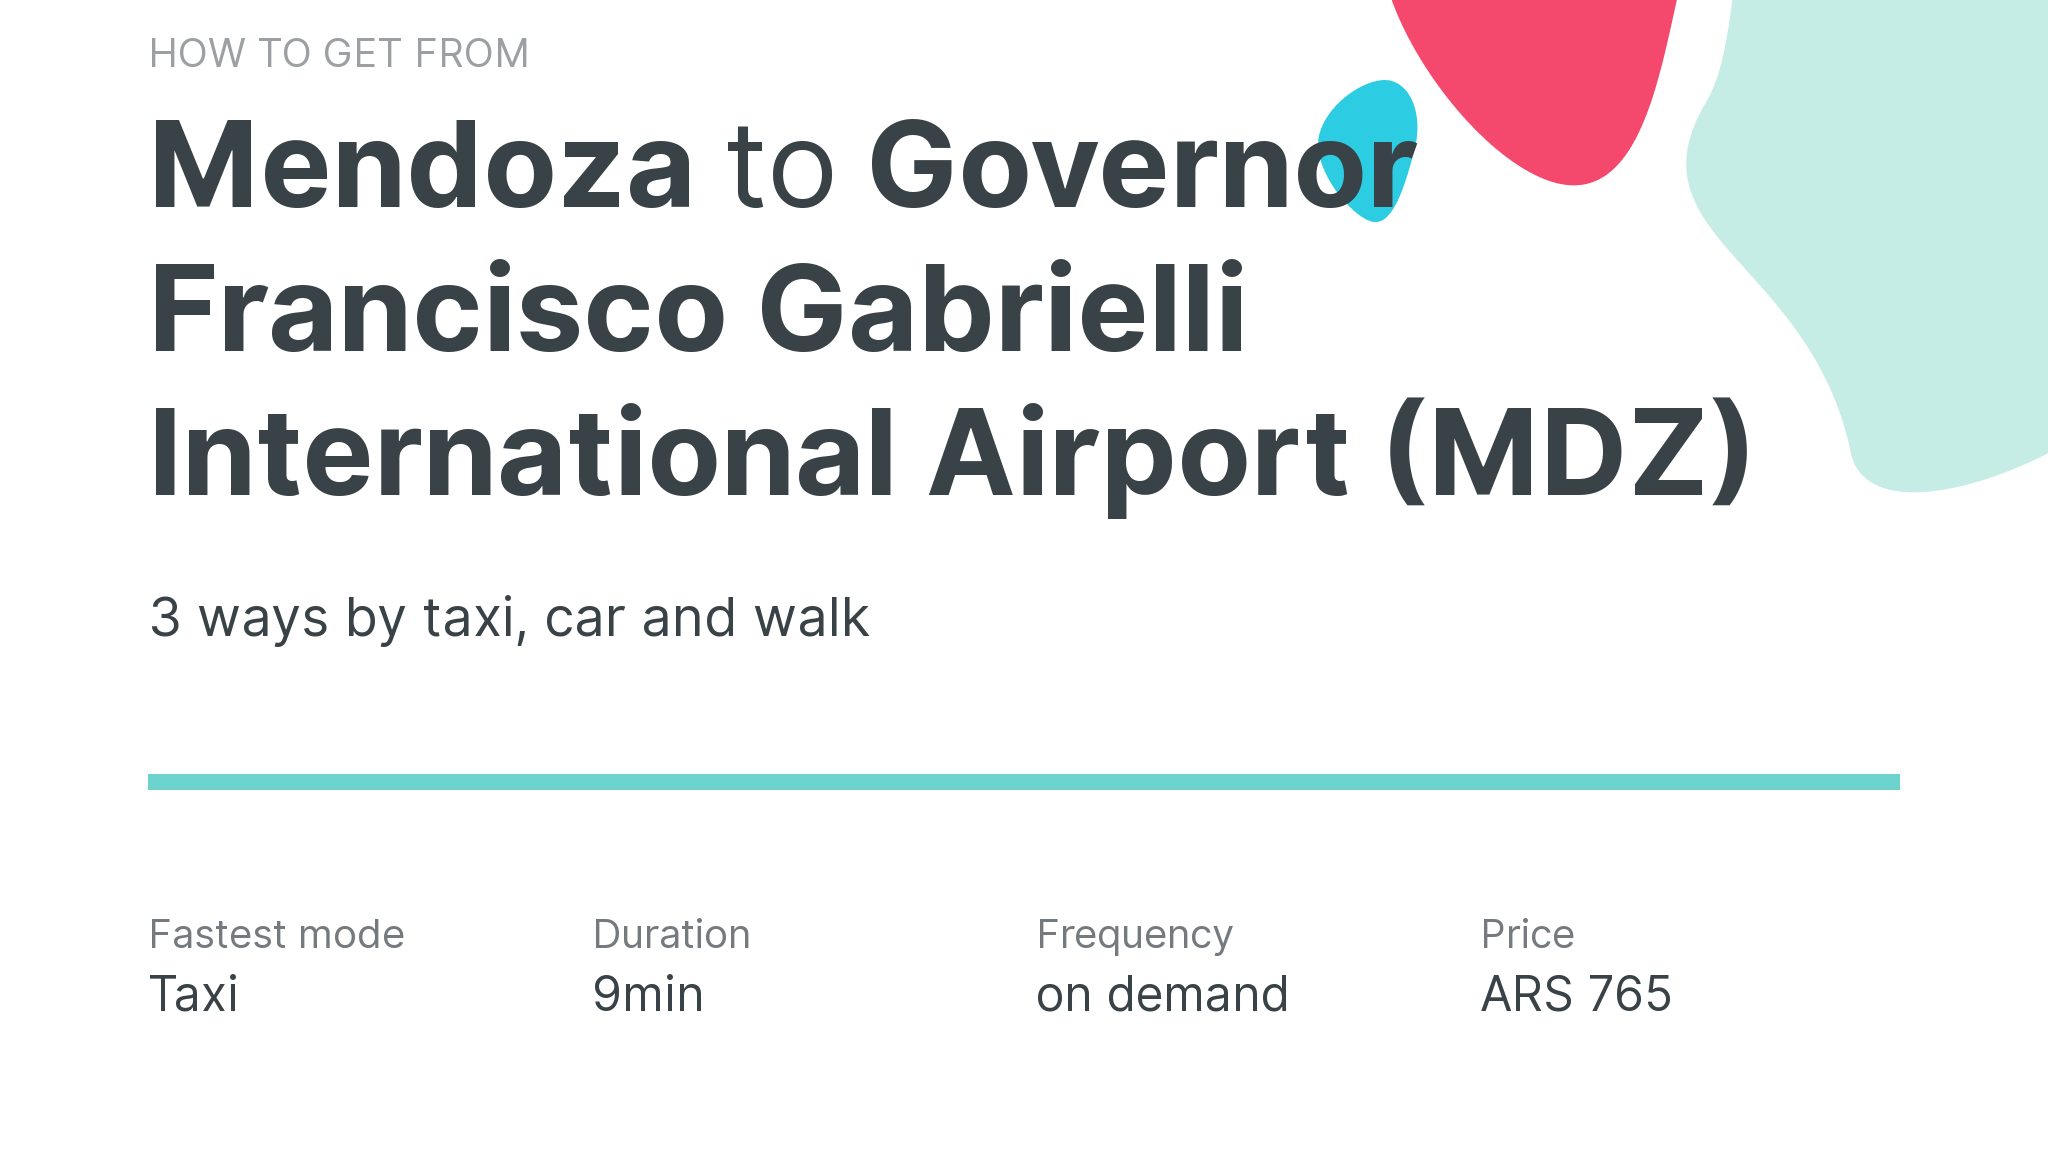 How do I get from Mendoza to Governor Francisco Gabrielli International Airport (MDZ)